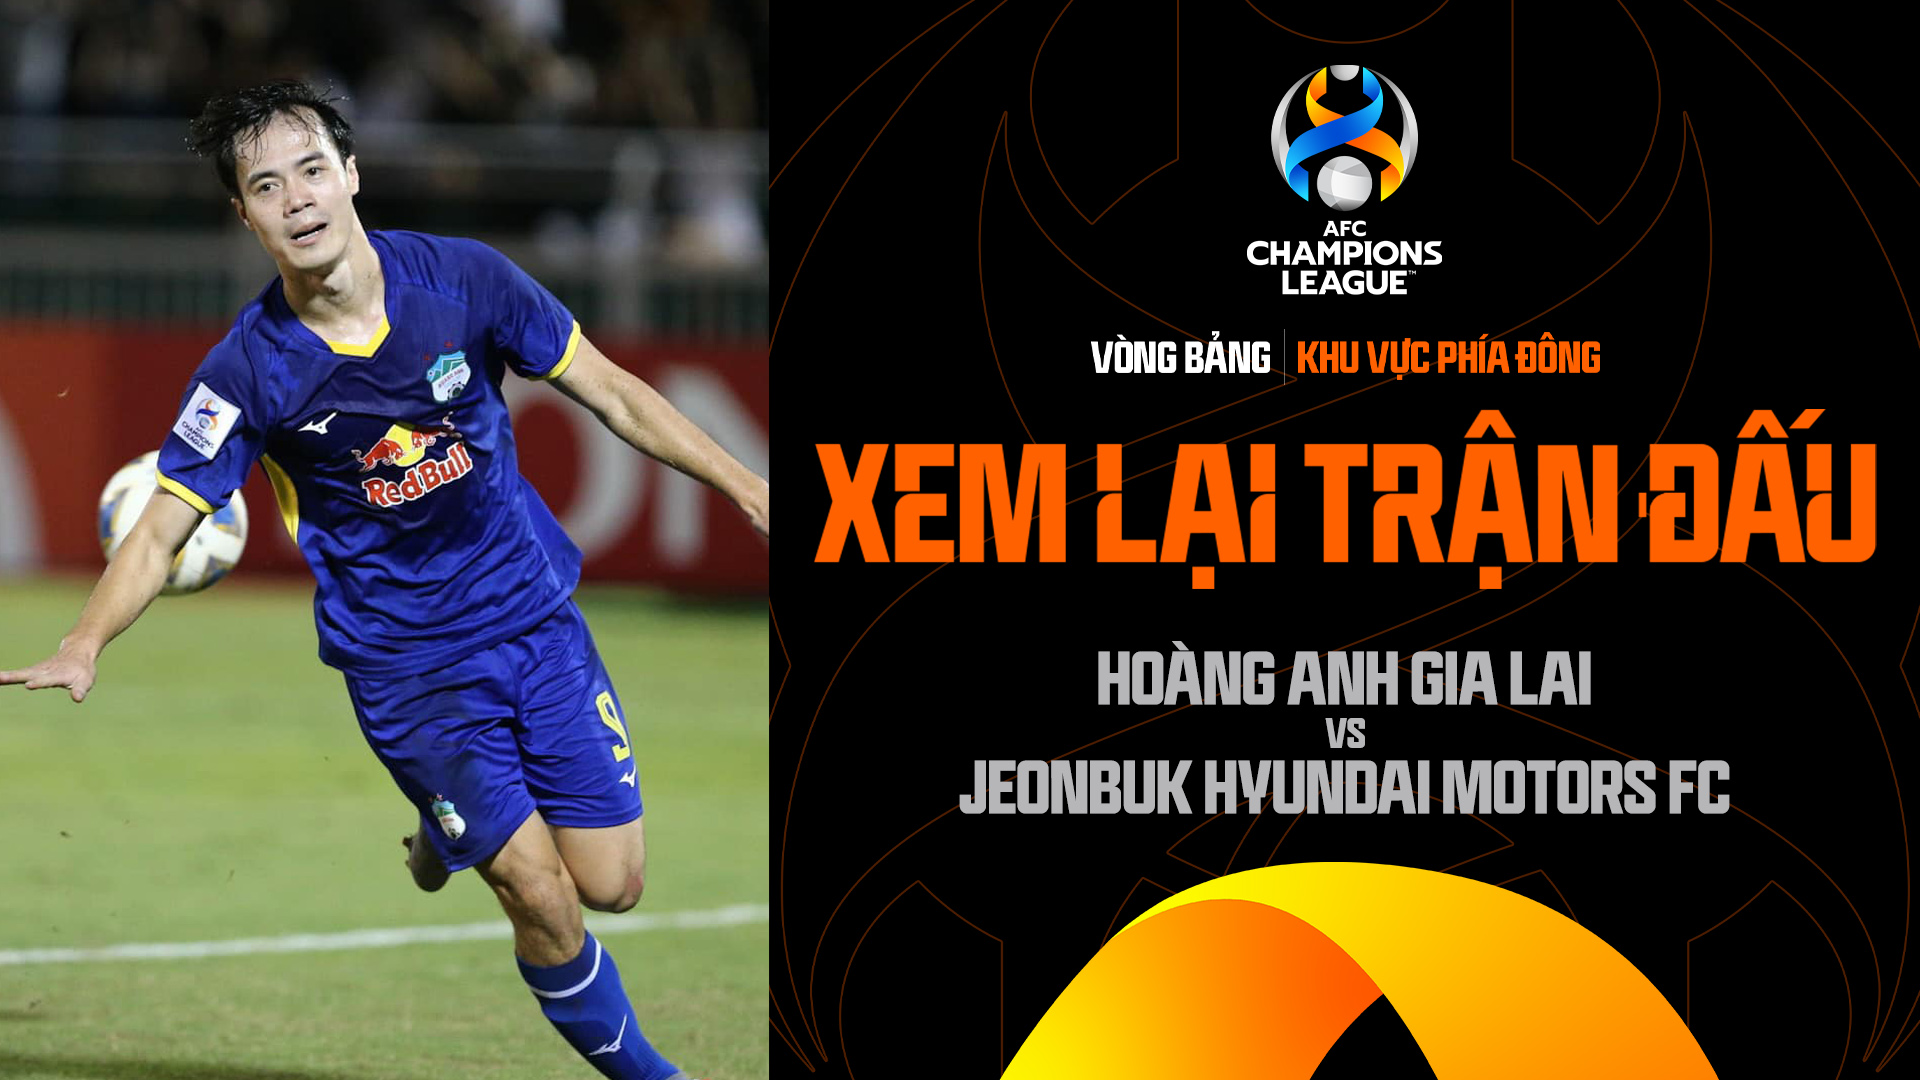 Hoàng Anh Gia Lai - Jeonbuk Hyundai Motors FC | Xem lại trận đấu - AFC Champions League